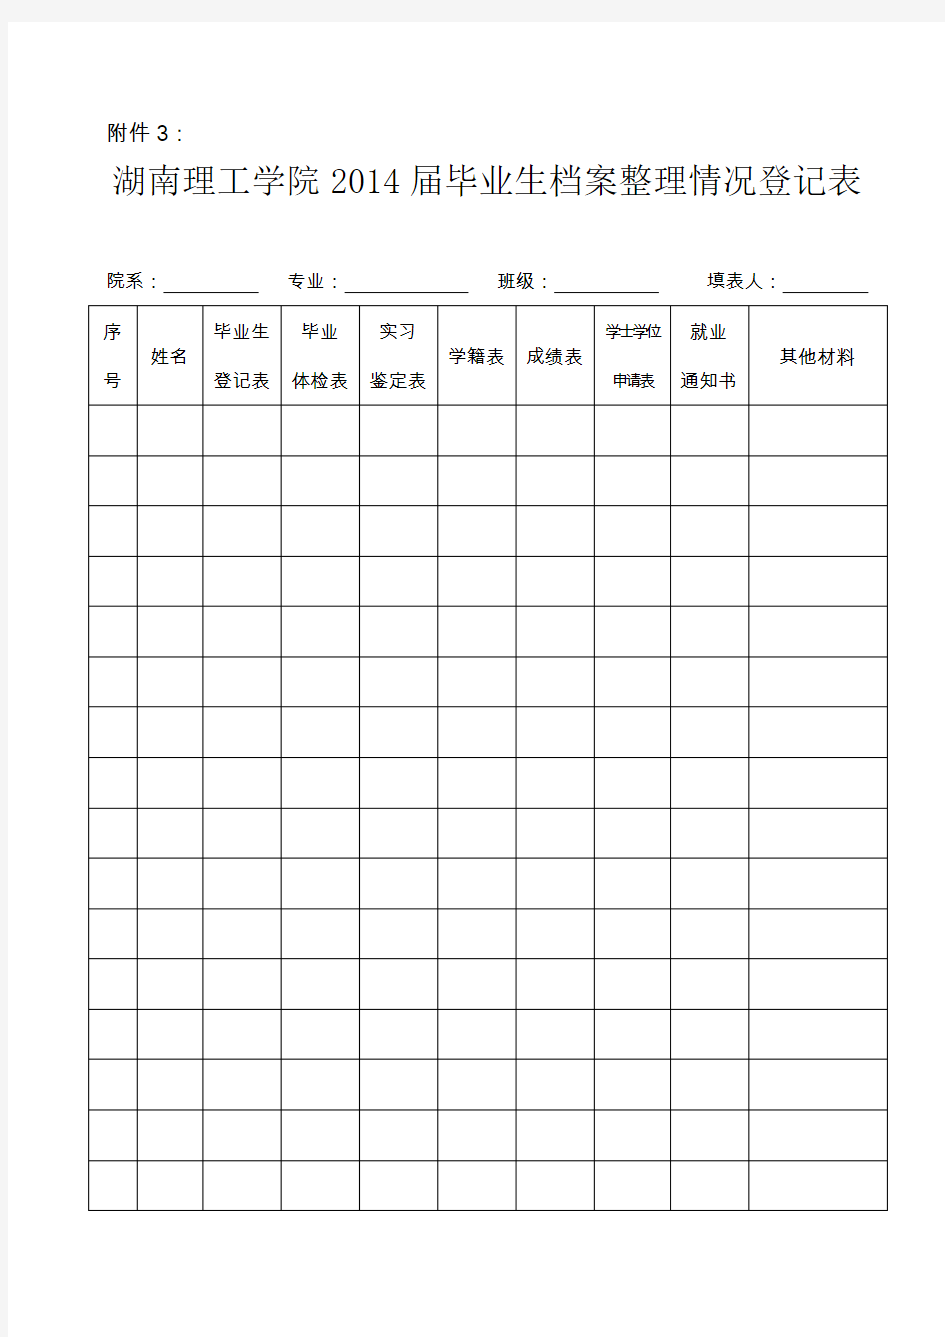 湖南理工学院2014届毕业生档案整理情况登记表